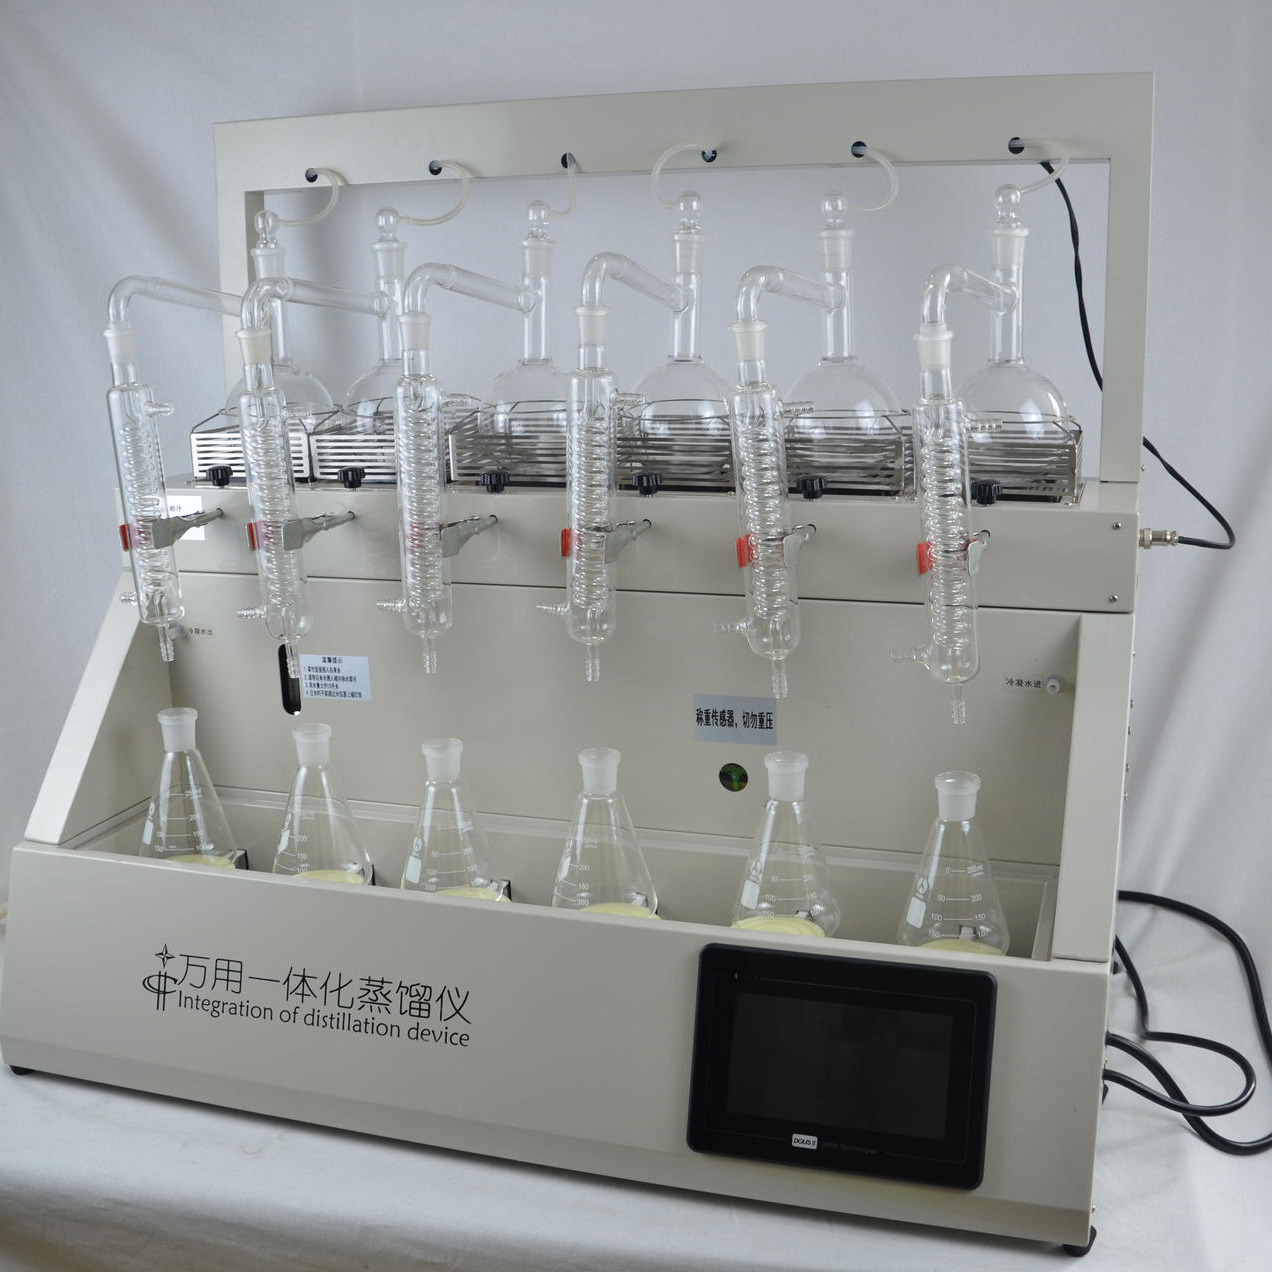 测青化物蒸馏装置 挥发酚蒸馏装置 挥发酚蒸馏装置仪器图片